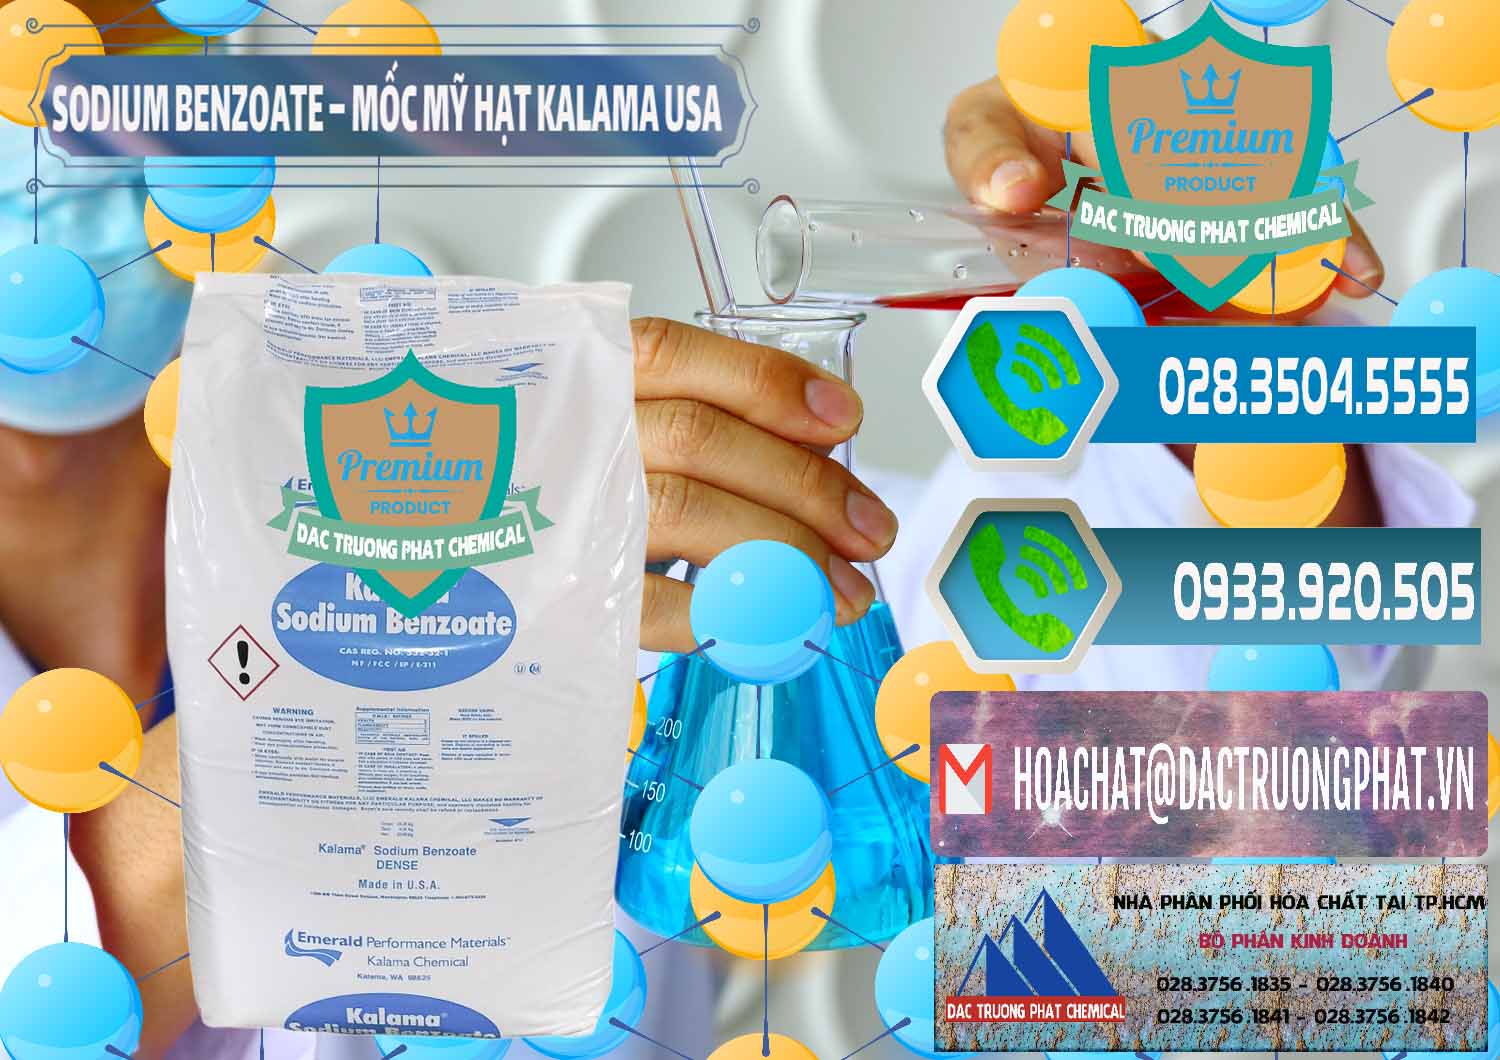 Chuyên bán - cung cấp Sodium Benzoate - Mốc Hạt Kalama Food Grade Mỹ Usa - 0137 - Nơi chuyên cung cấp - kinh doanh hóa chất tại TP.HCM - congtyhoachat.net